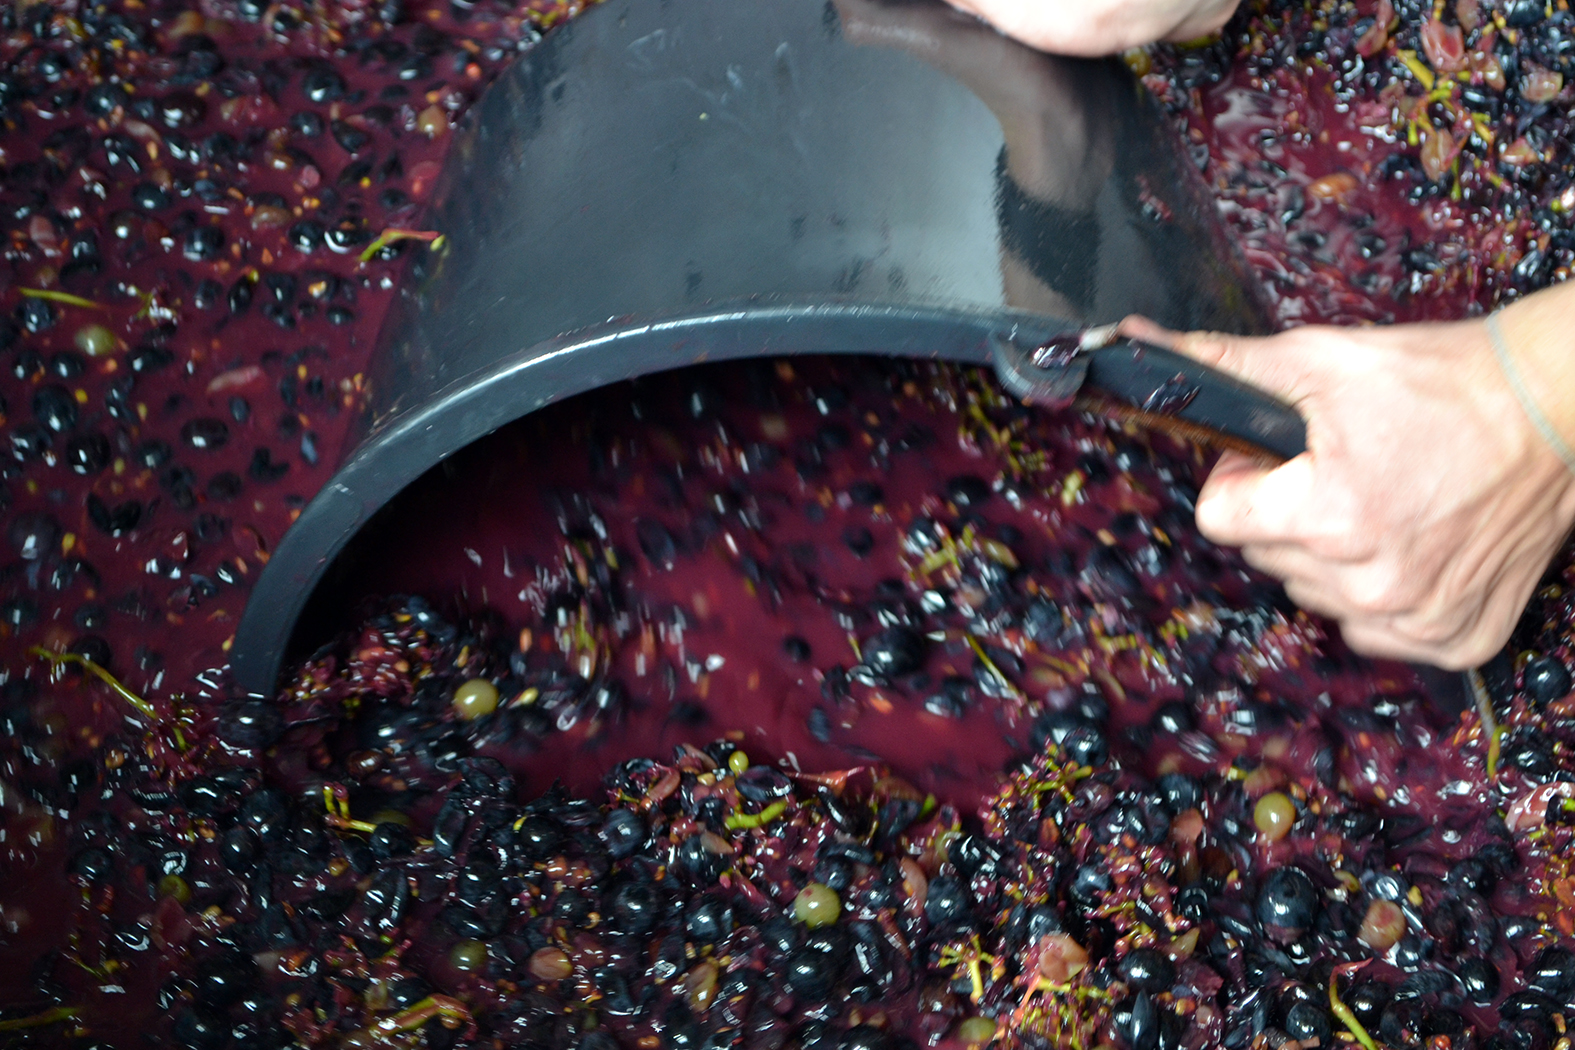 Полученное виноградное сусло пойдет на производство граппы, которую гости смогут отведать на празднике Урожая в следующем году.